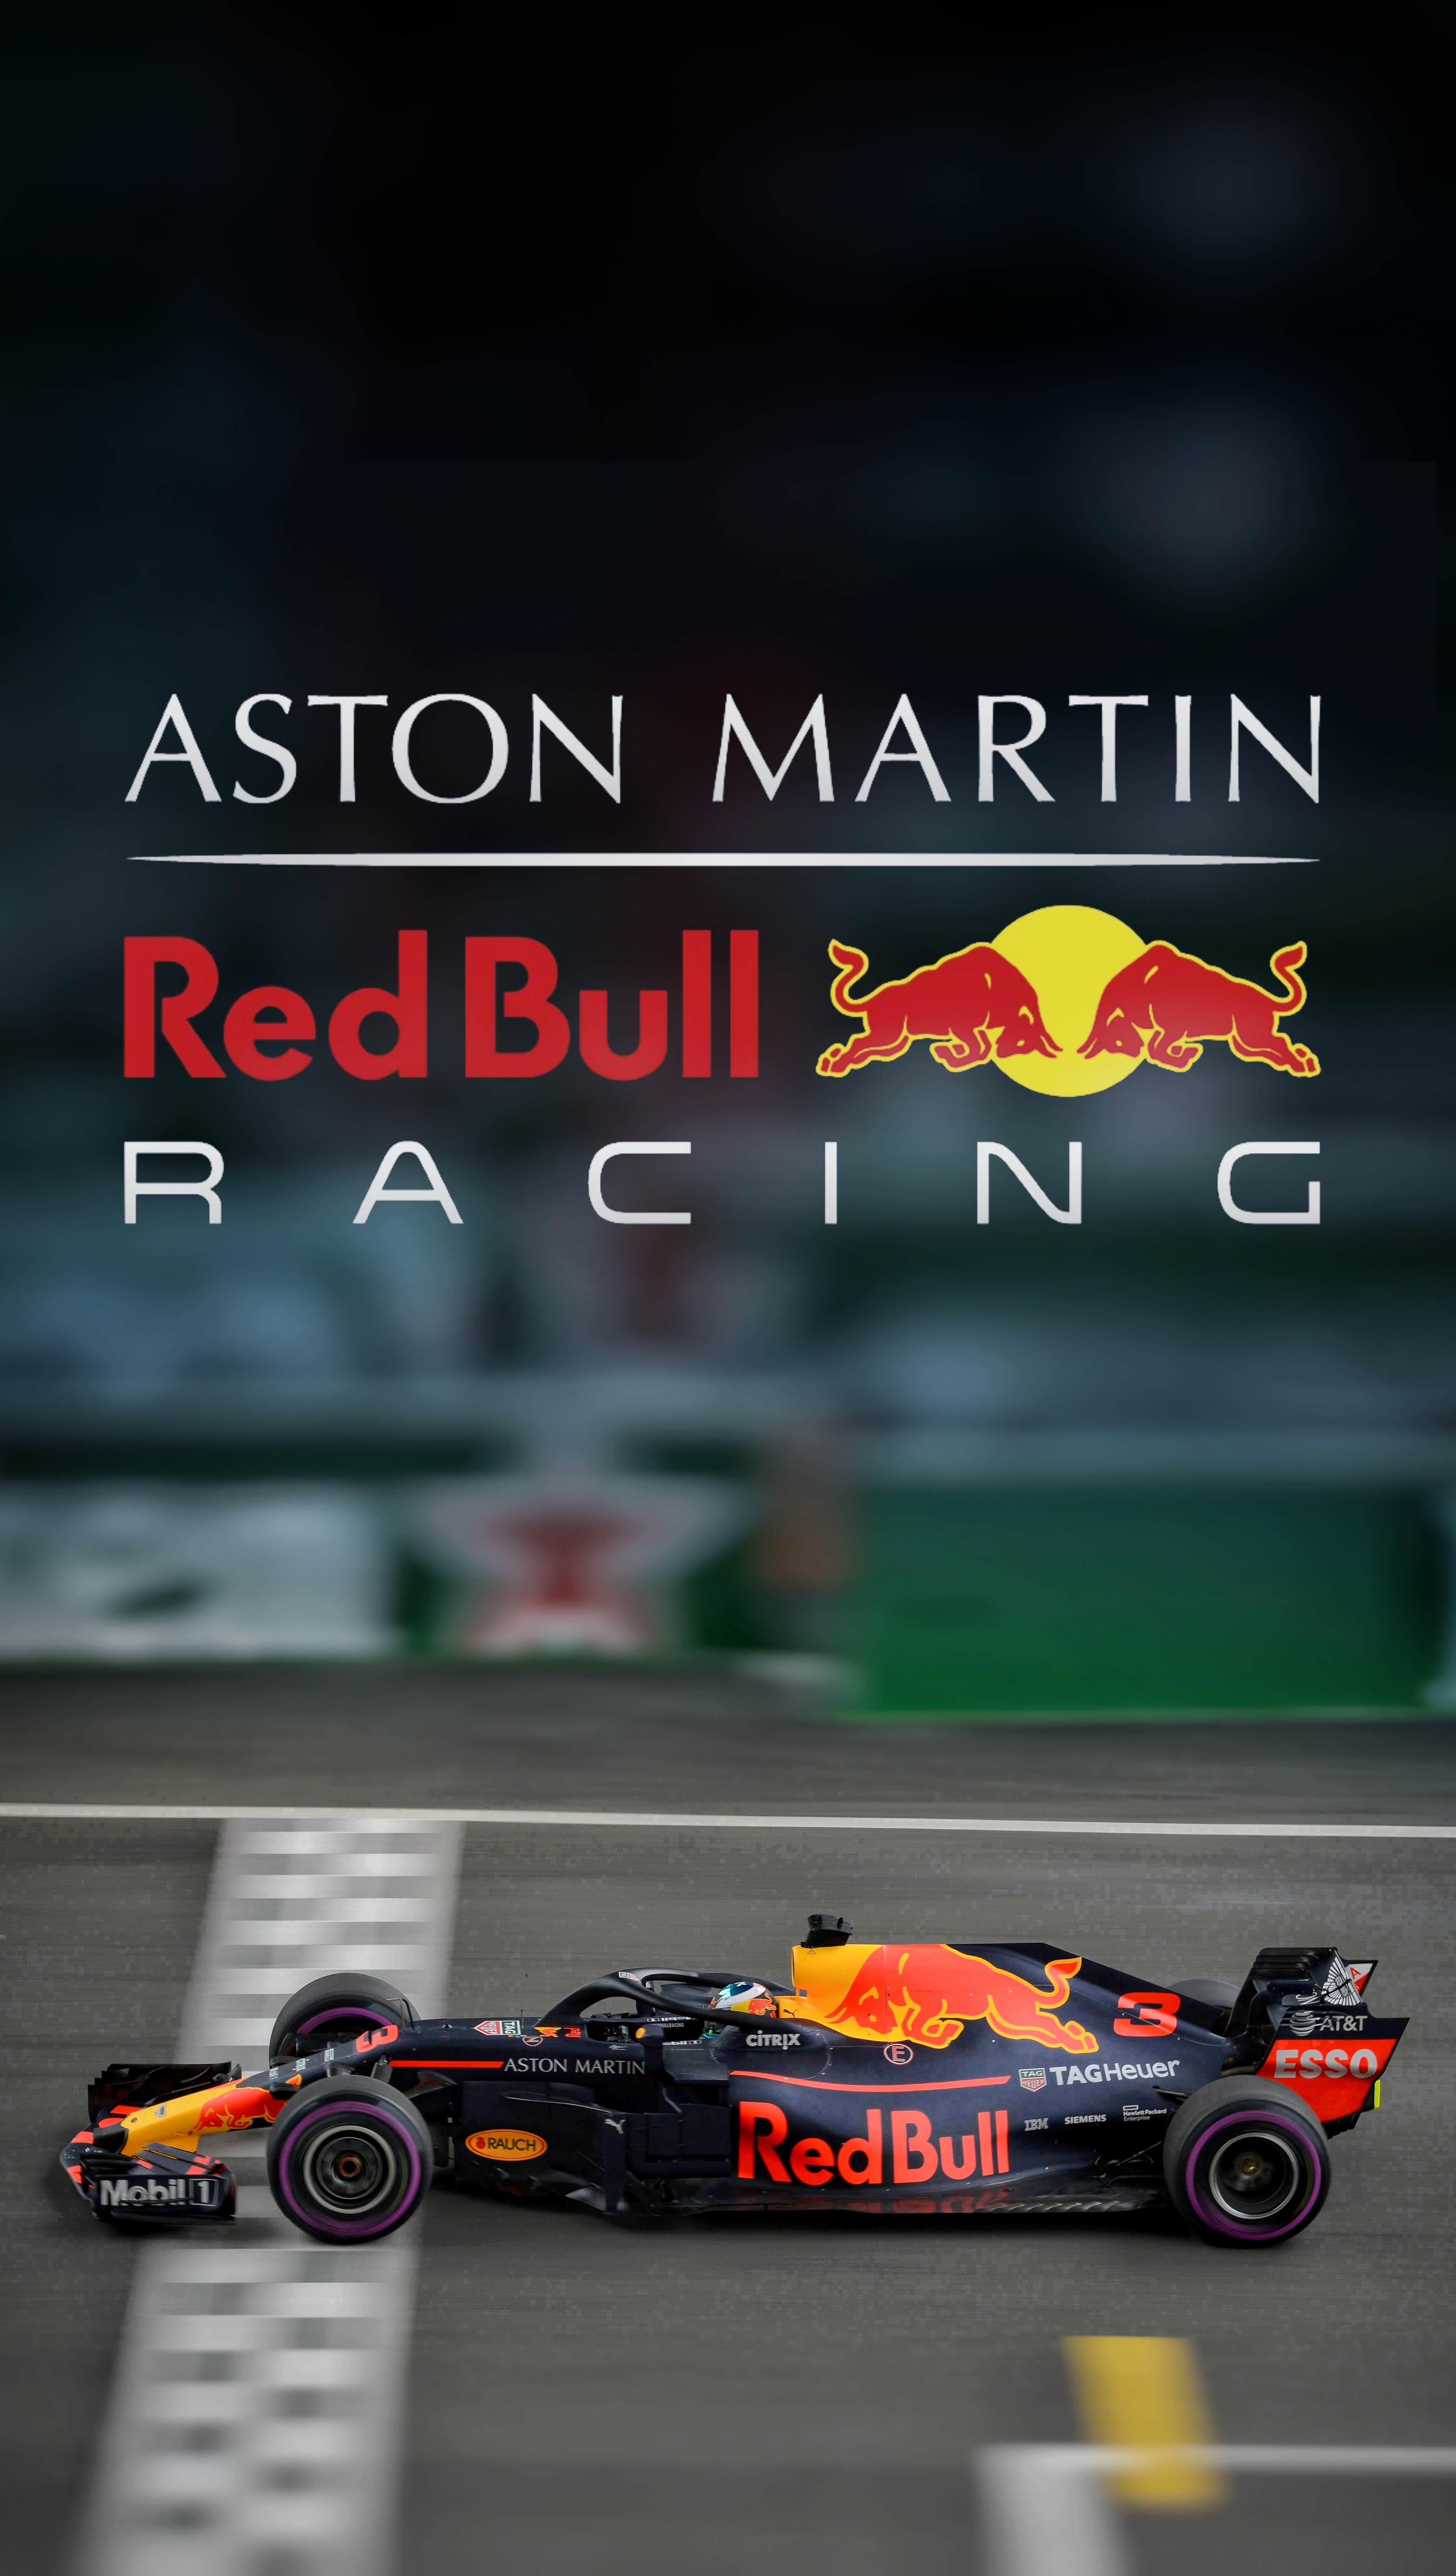 Red Bull Racing Ricciardo [mobile wallpaper]